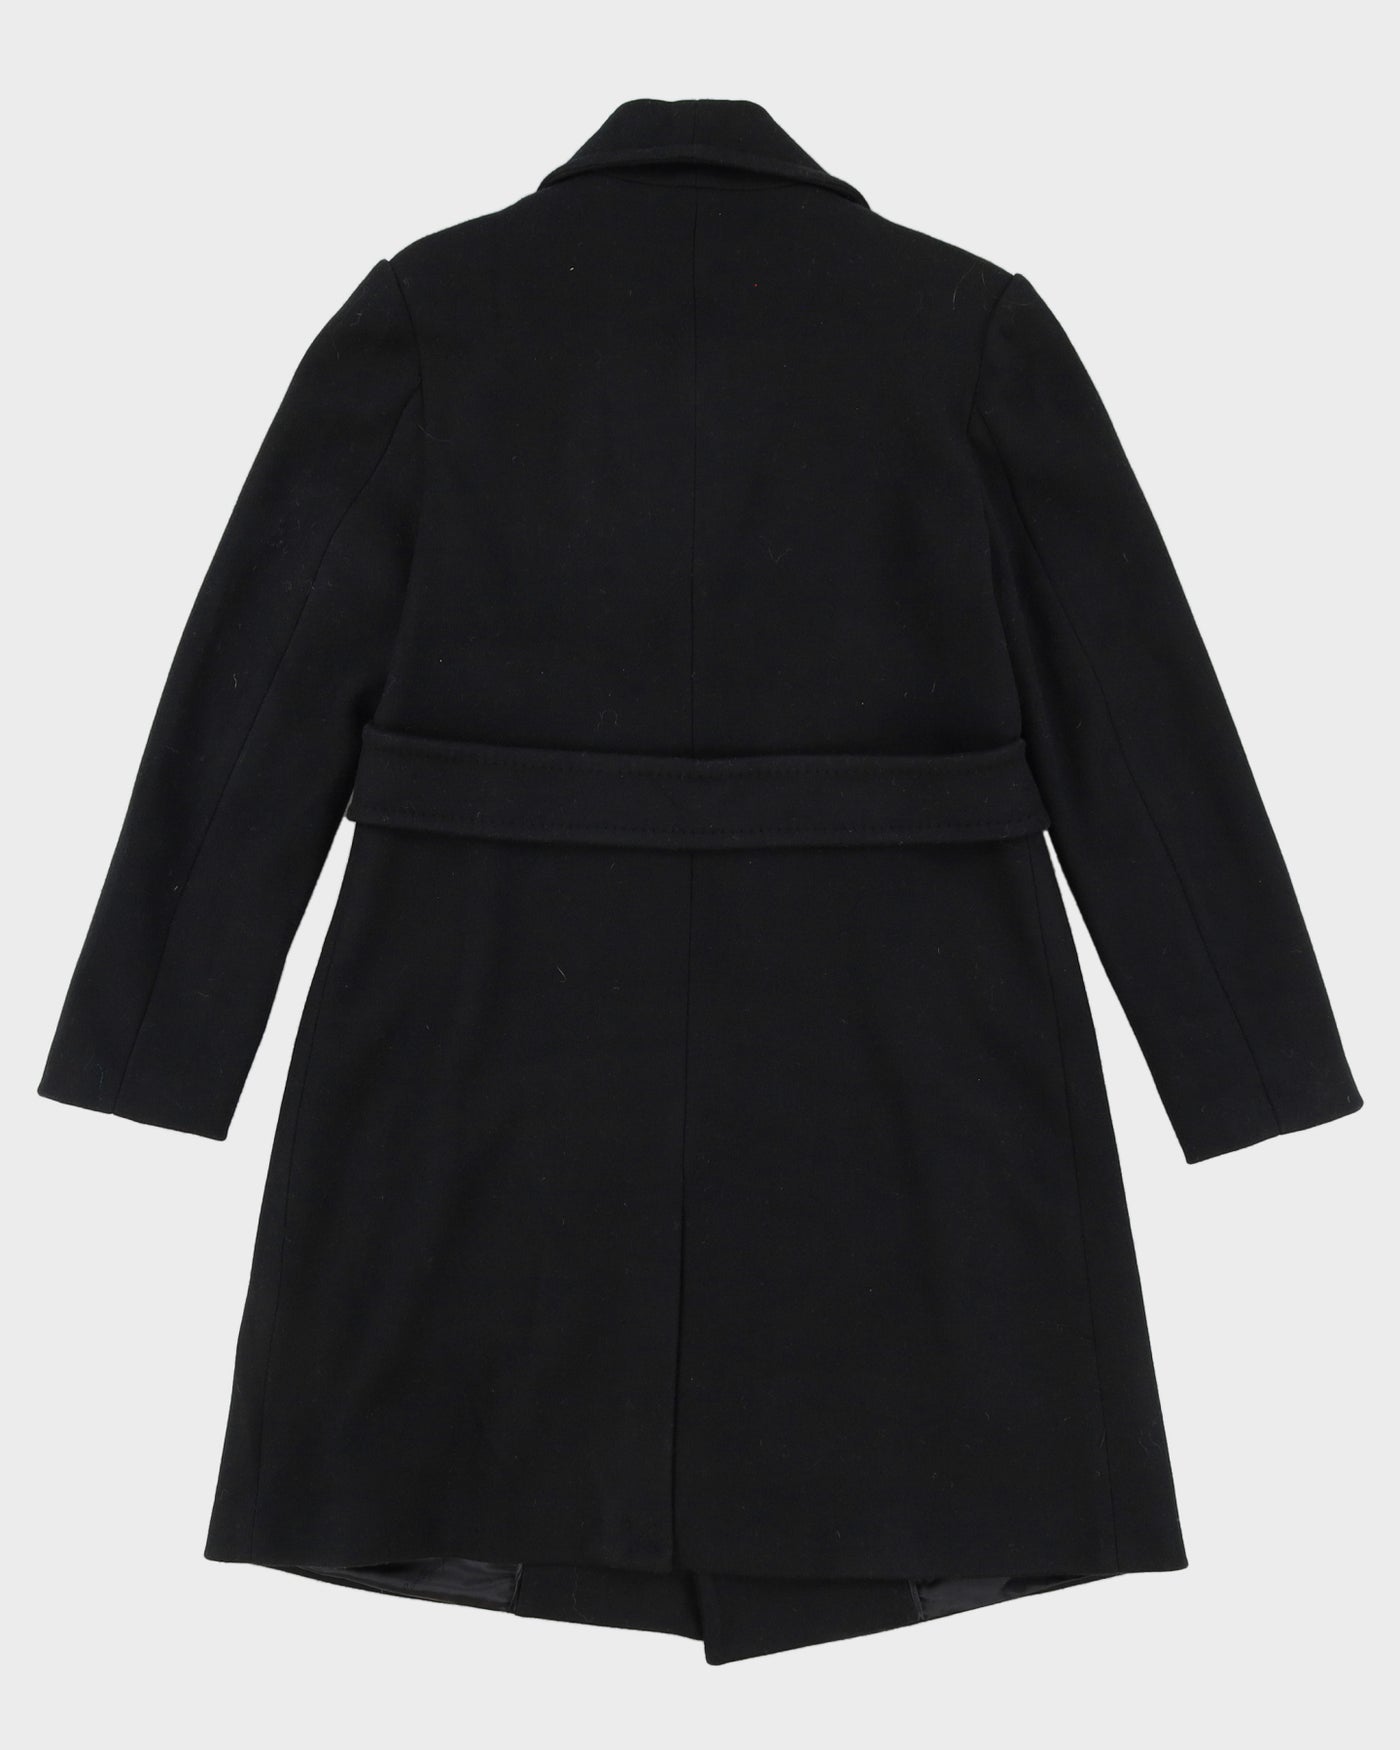 Karl Lagerfeld Black Overcoat - S